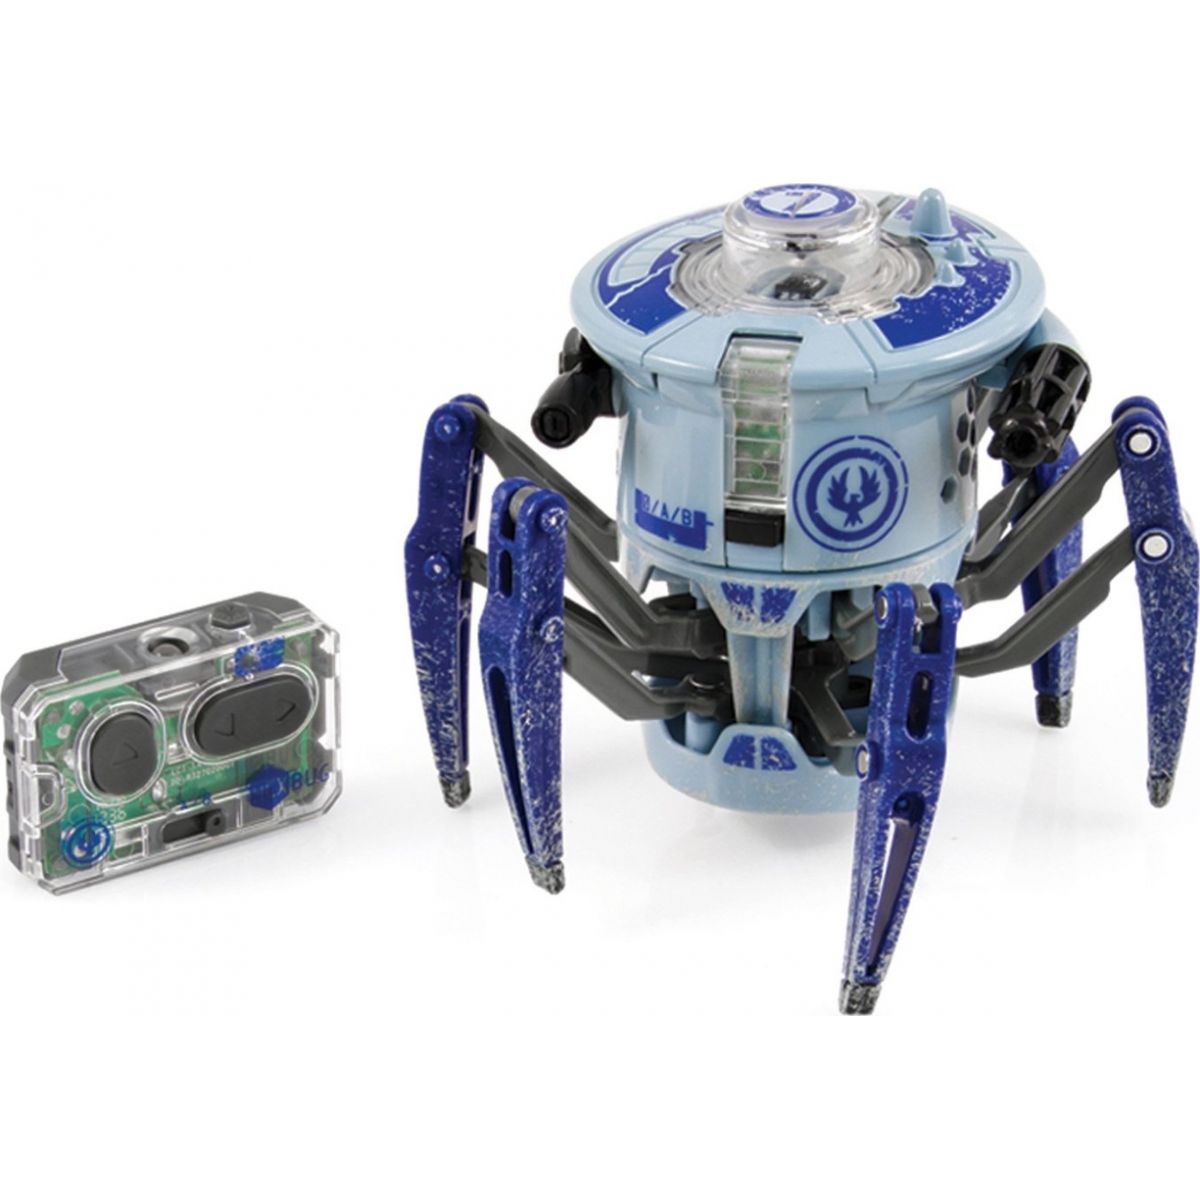 Hexbug Bojující pavouk - Modrá - II. jakost